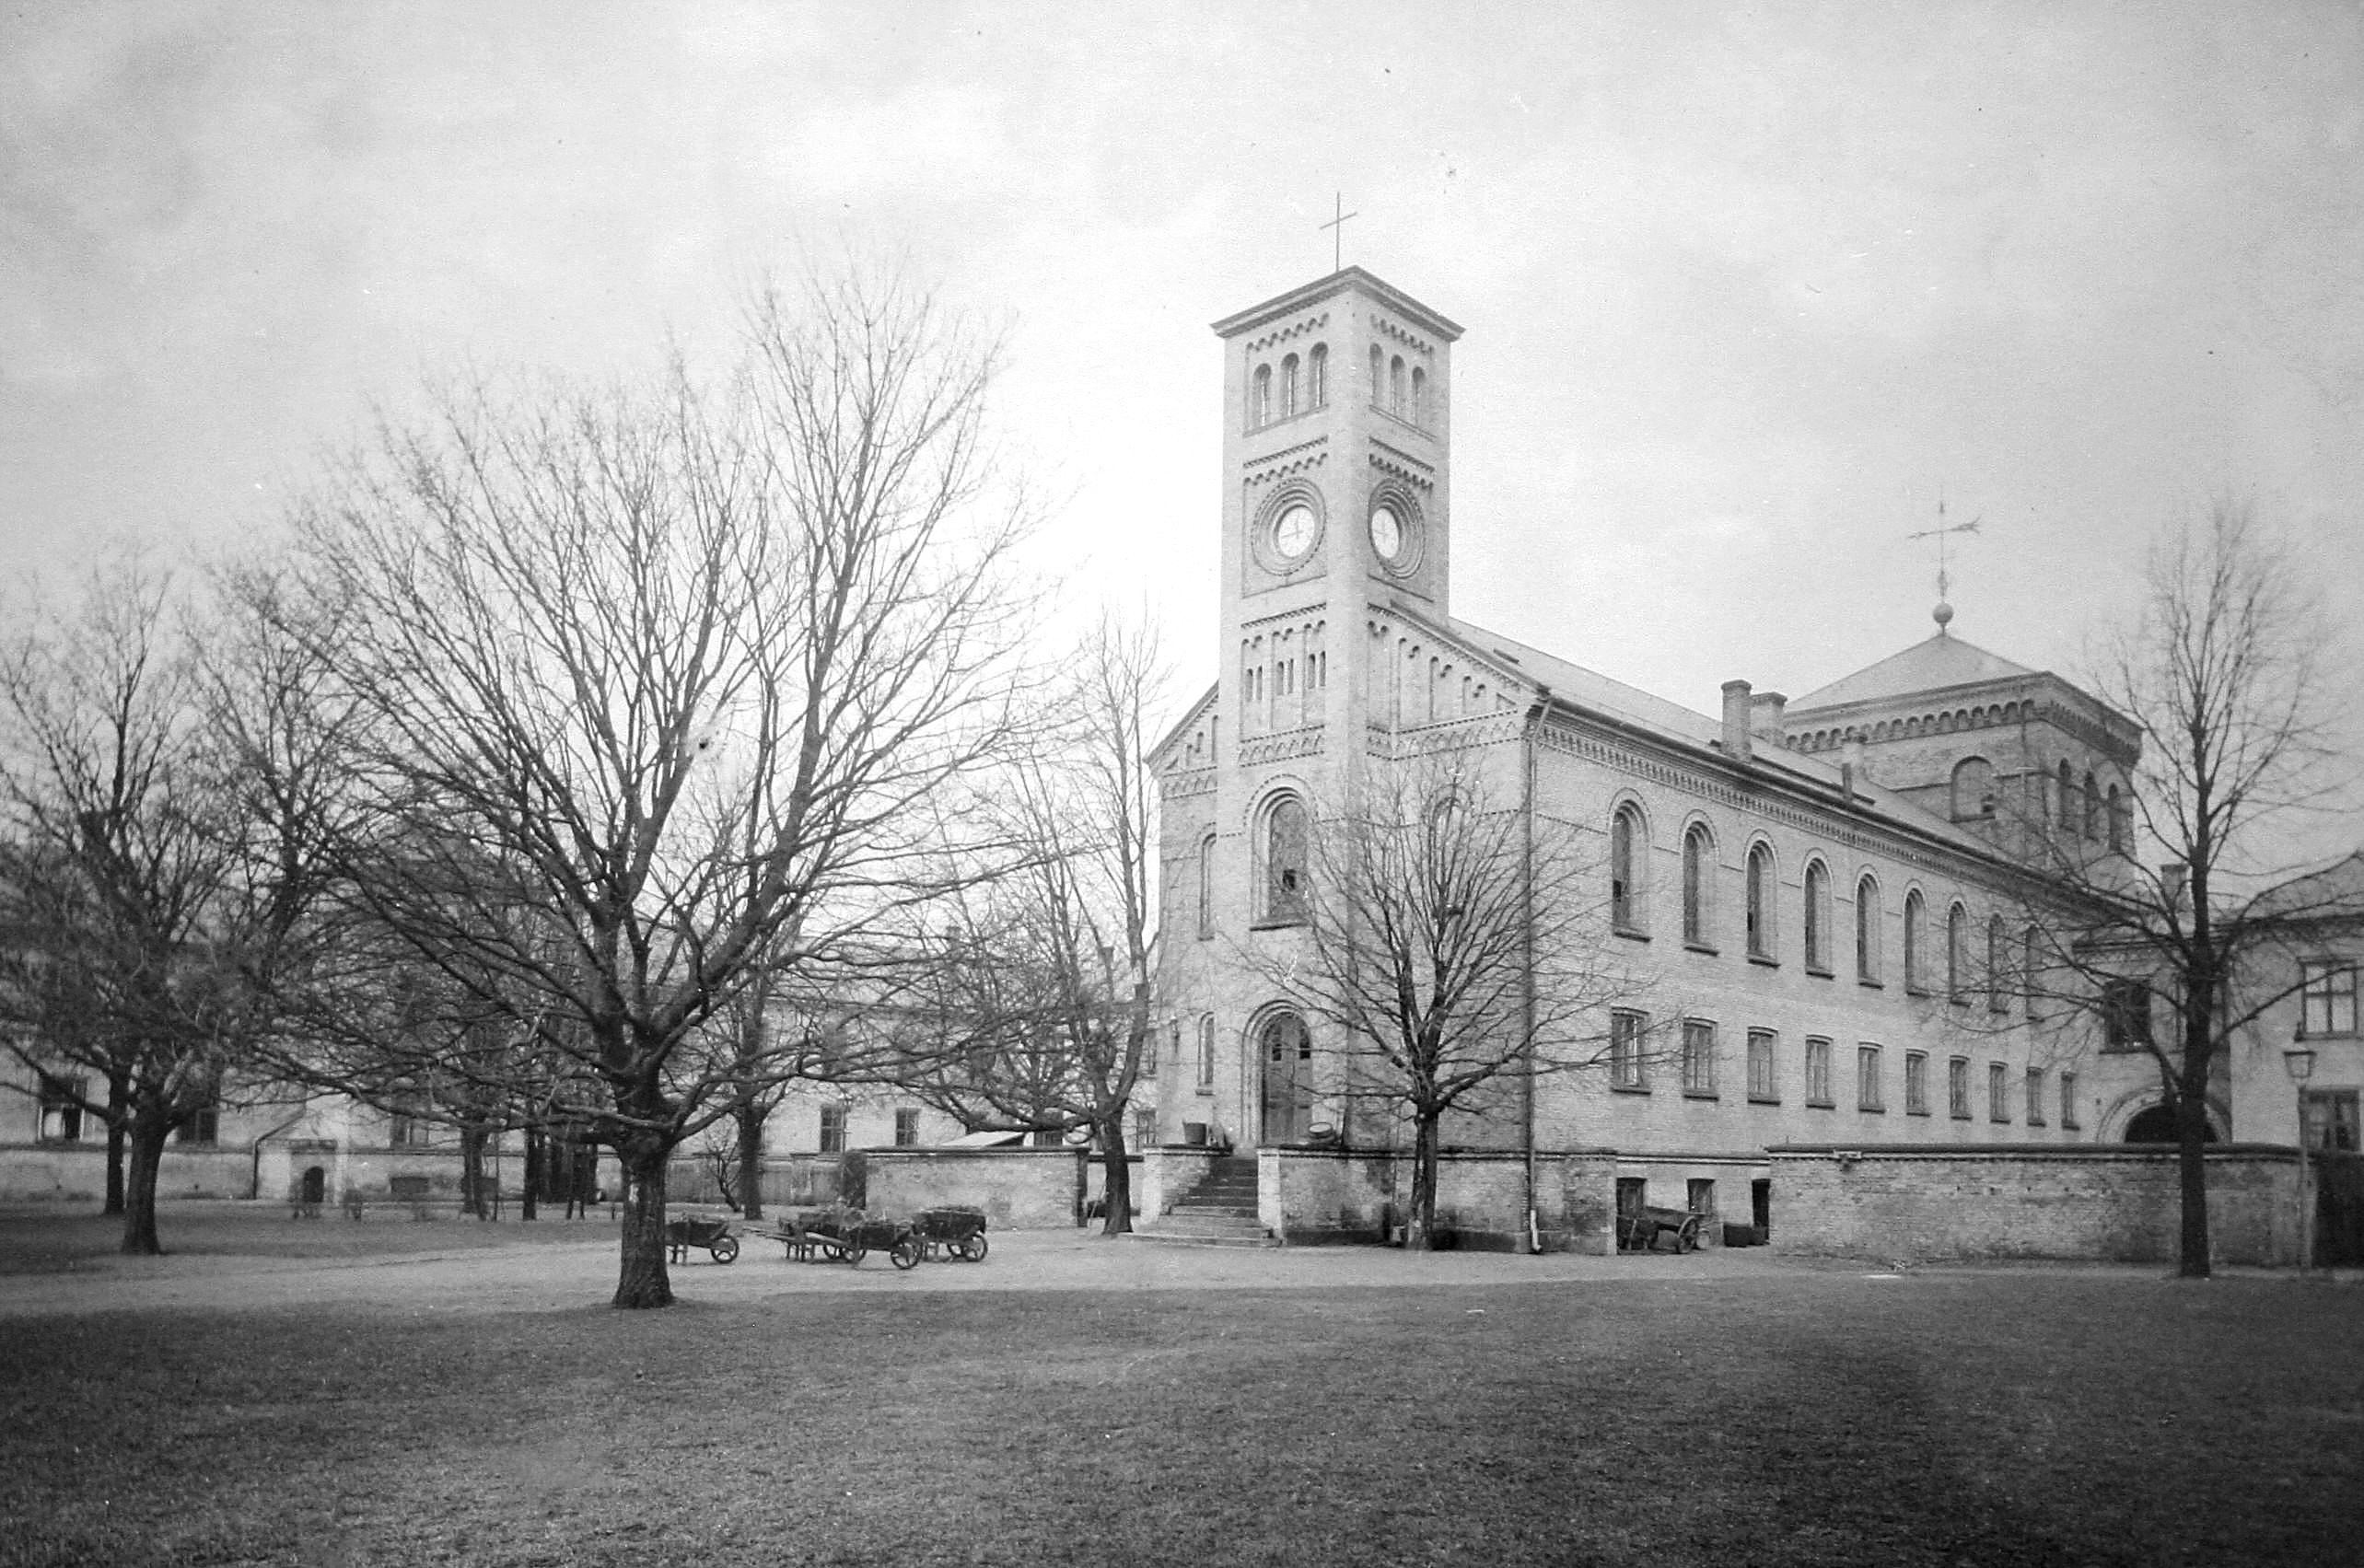 Kurhus på Sct. Hans Hospital ca. 1915